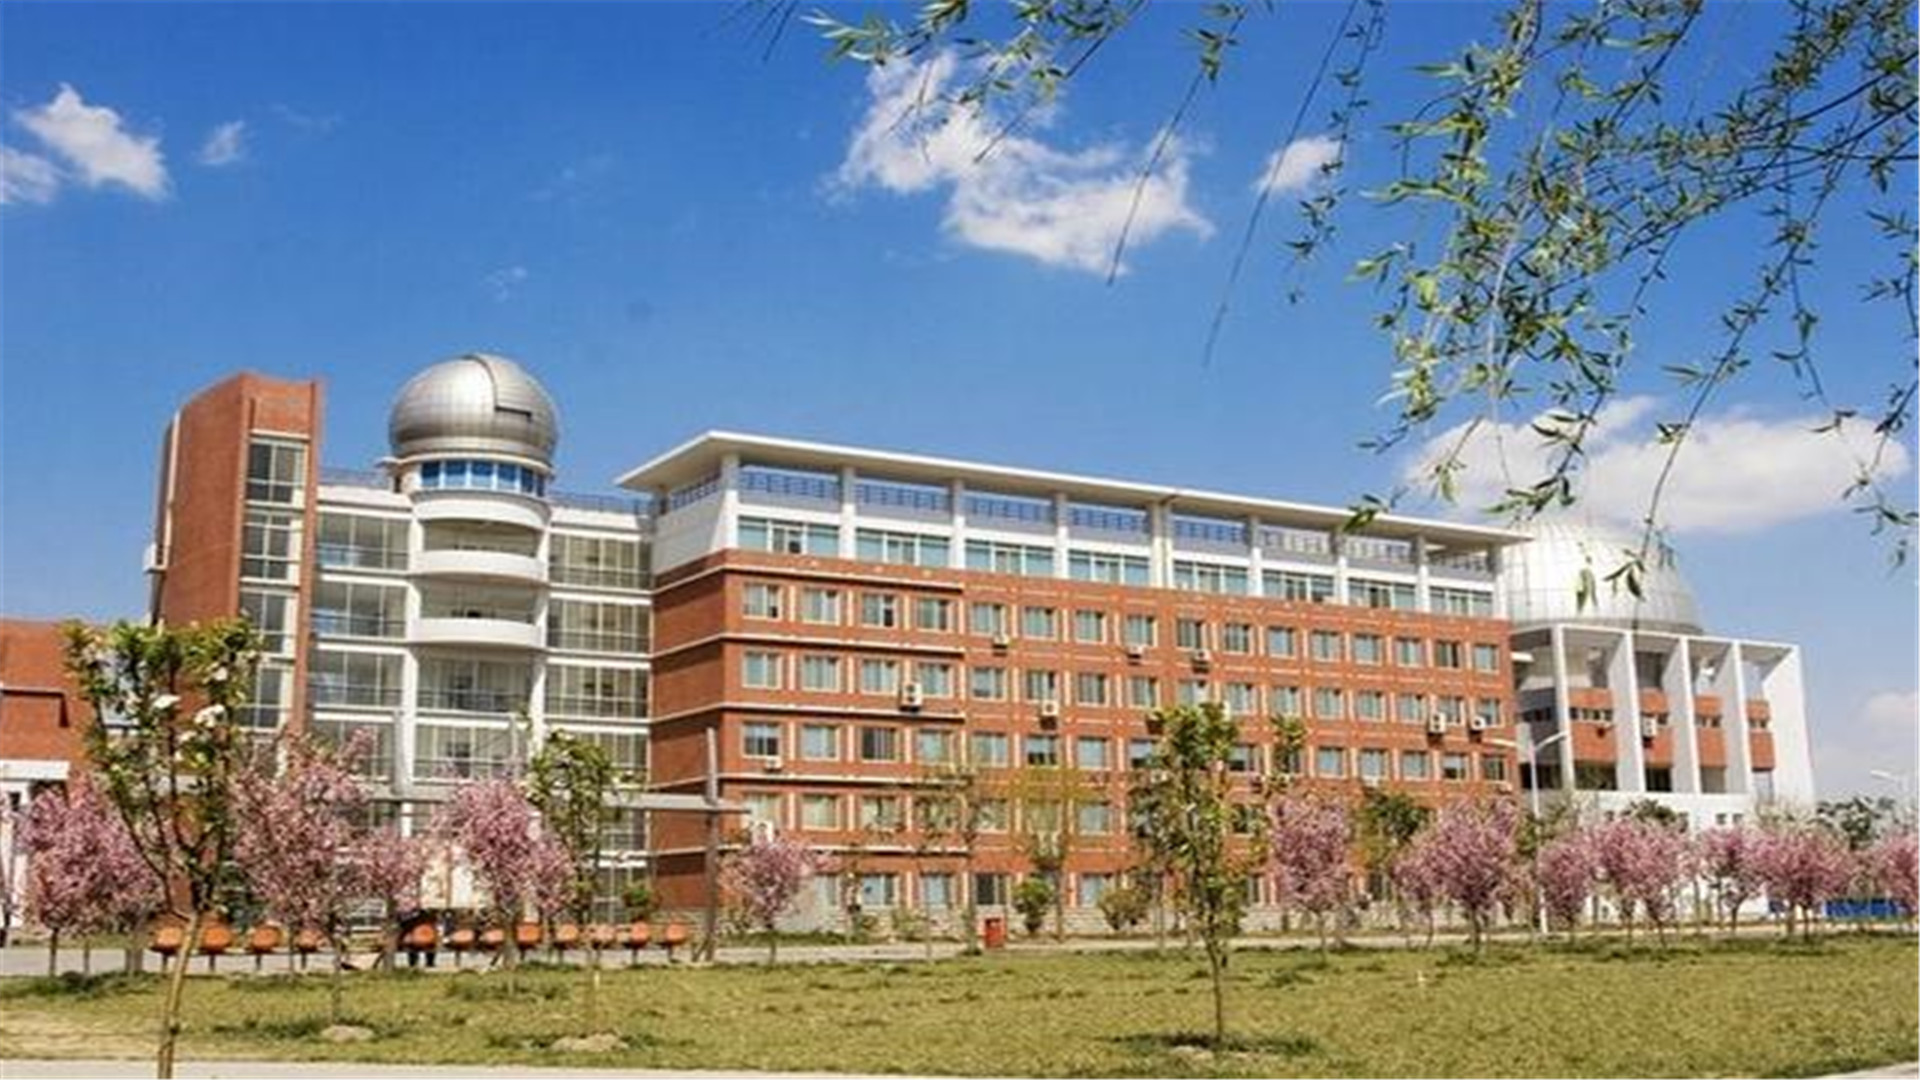 林州市迎来一所新大学,占地面积约为1260亩,备受考生关注